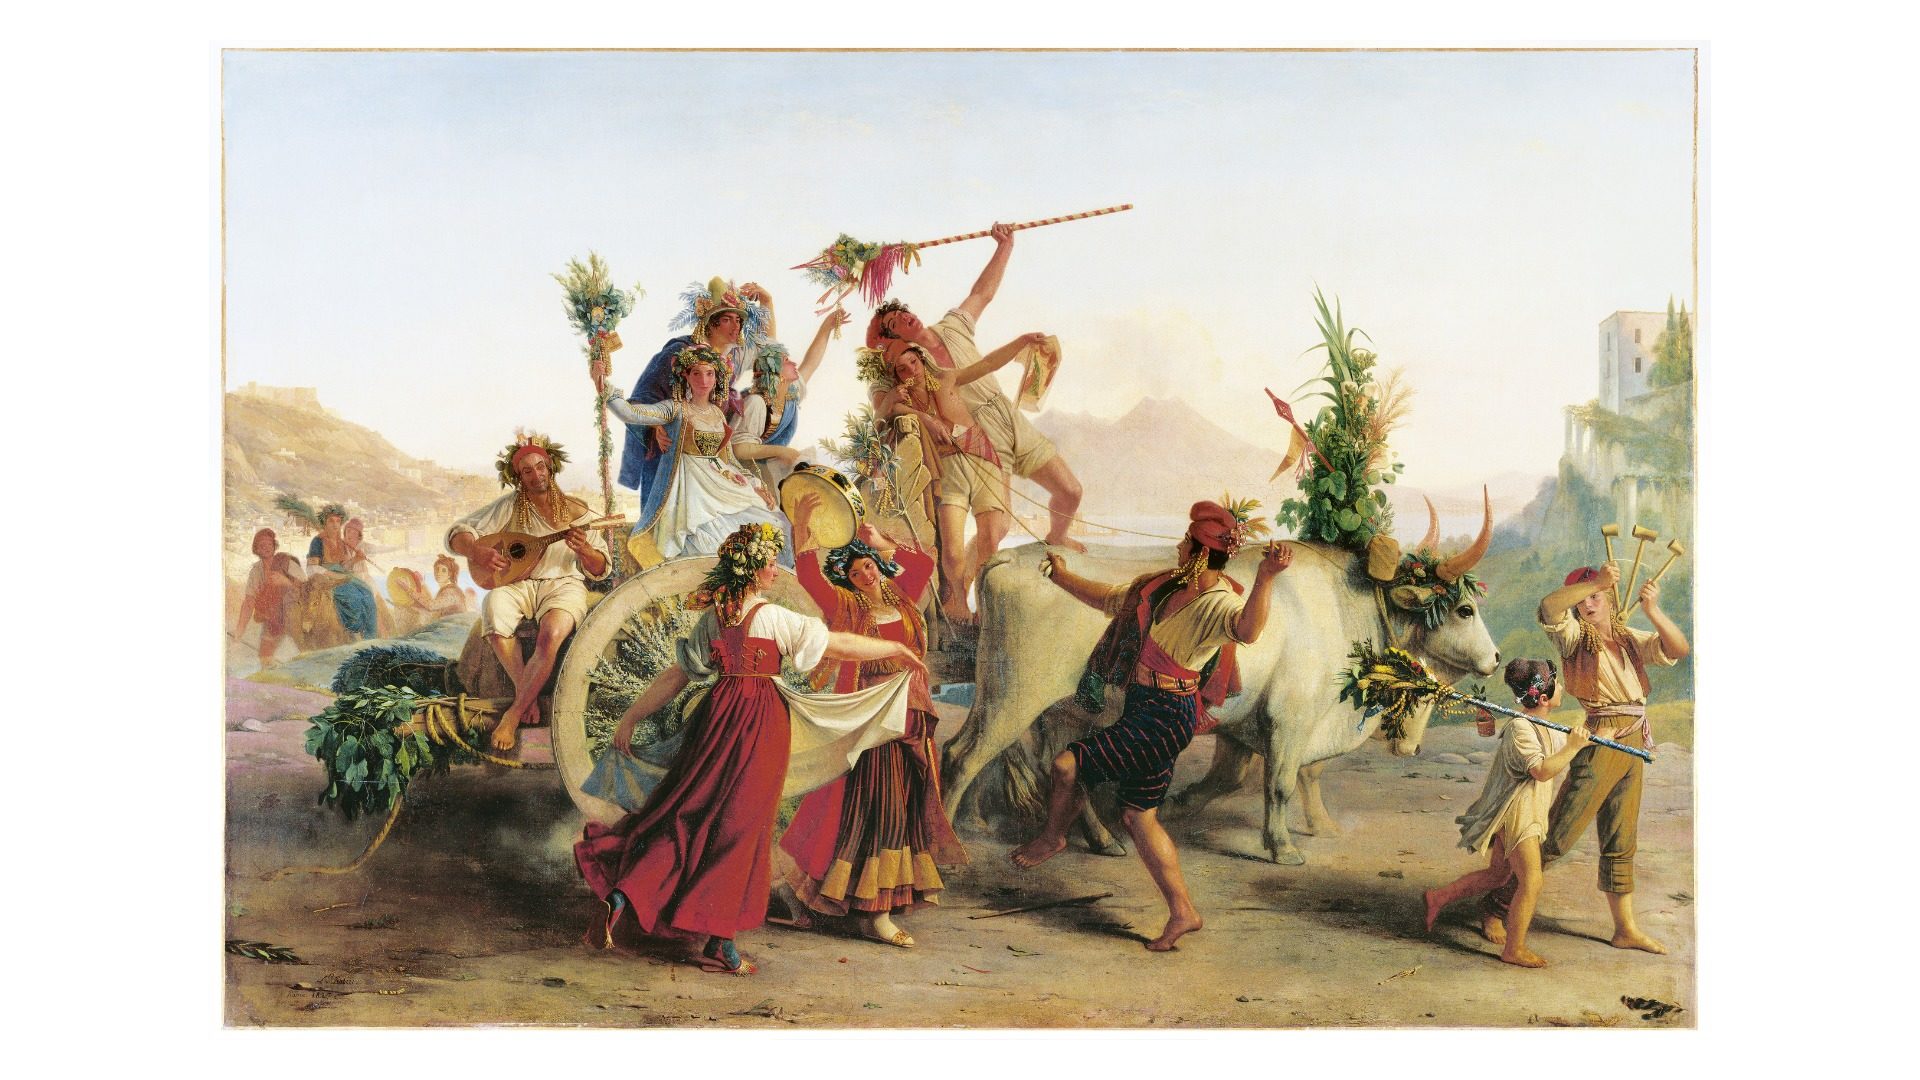 Peint par Léopold Robert en 1827, Le Retour de la fête de la Madone de l’Arc, près de Naples, est a découvrir au MBA. (Photo : Musée du Louvre / Gérard Blot)